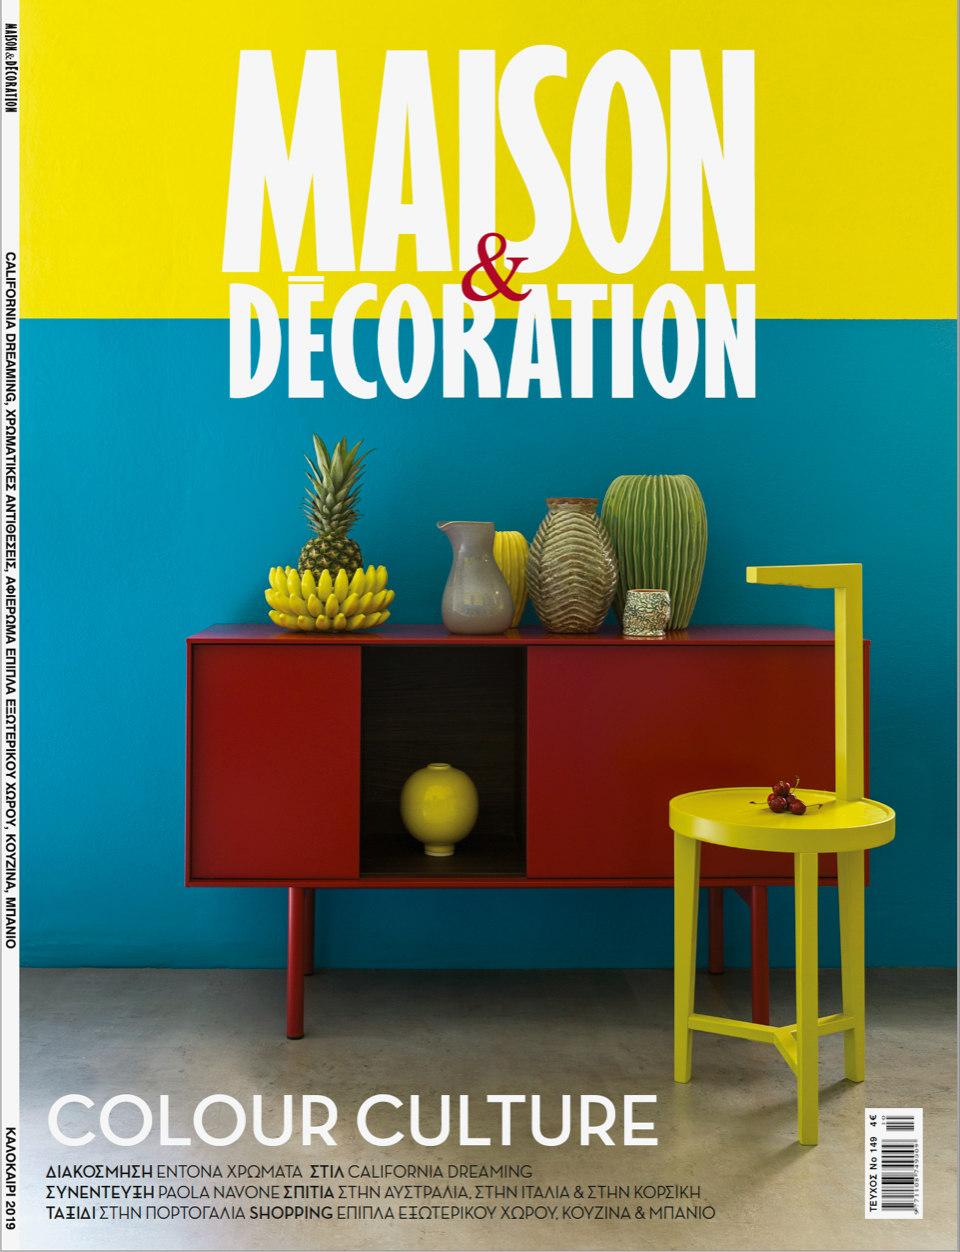 Maison & Decoration Magazine Greece, Roscommon House